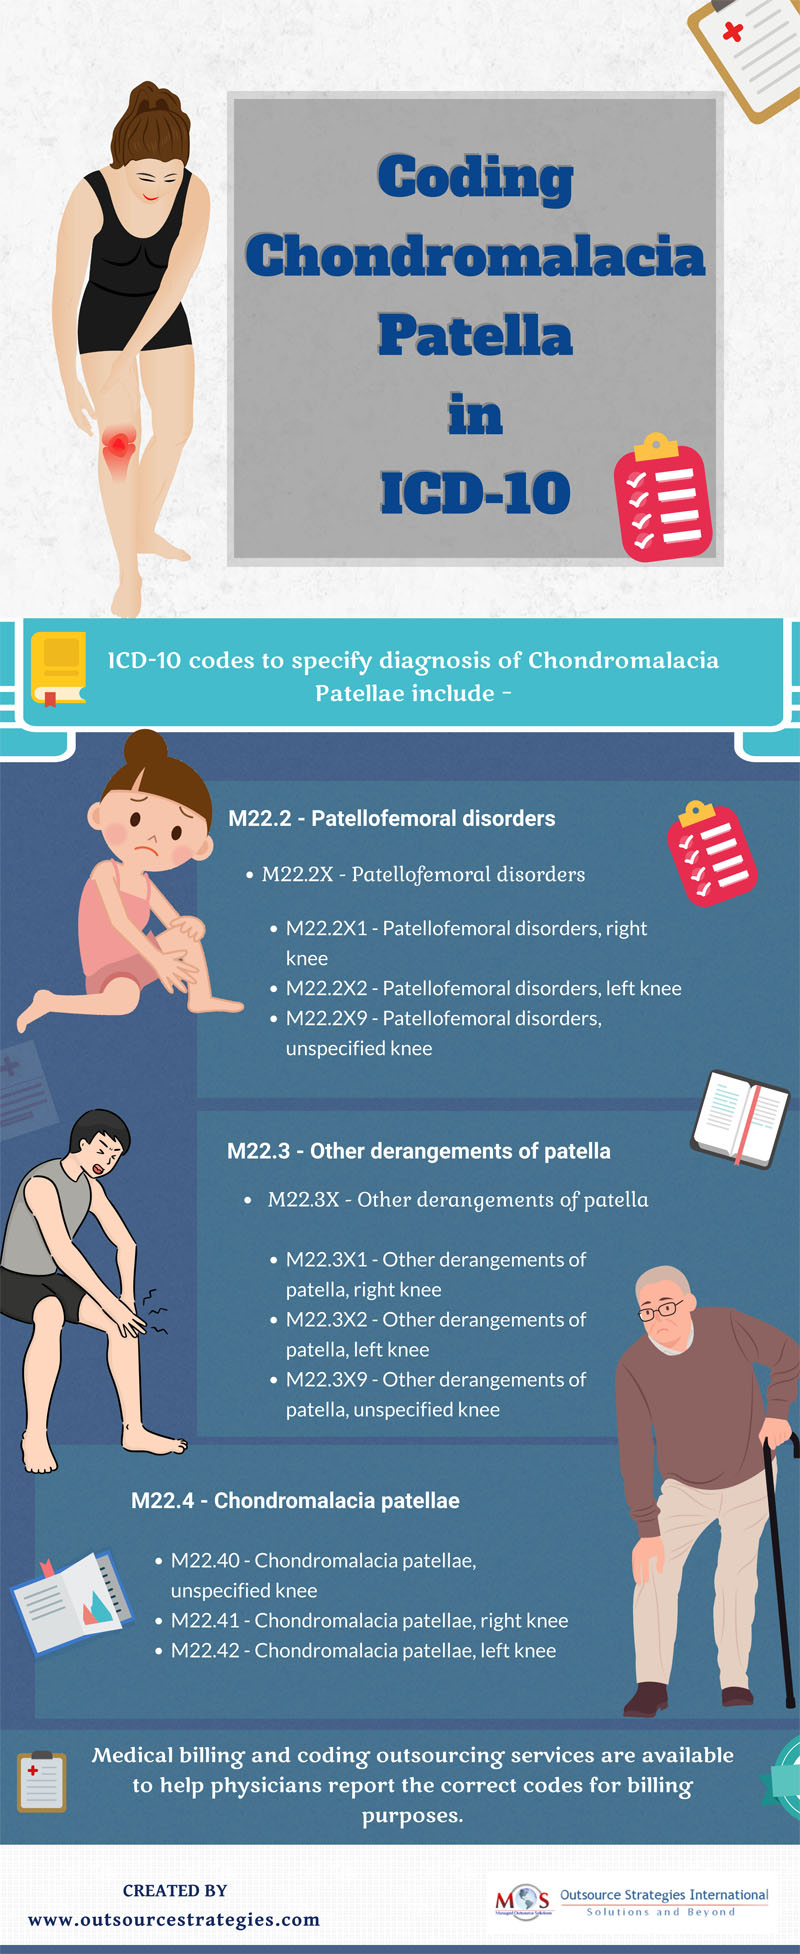 Coding Chondromalacia Patella in ICD-10